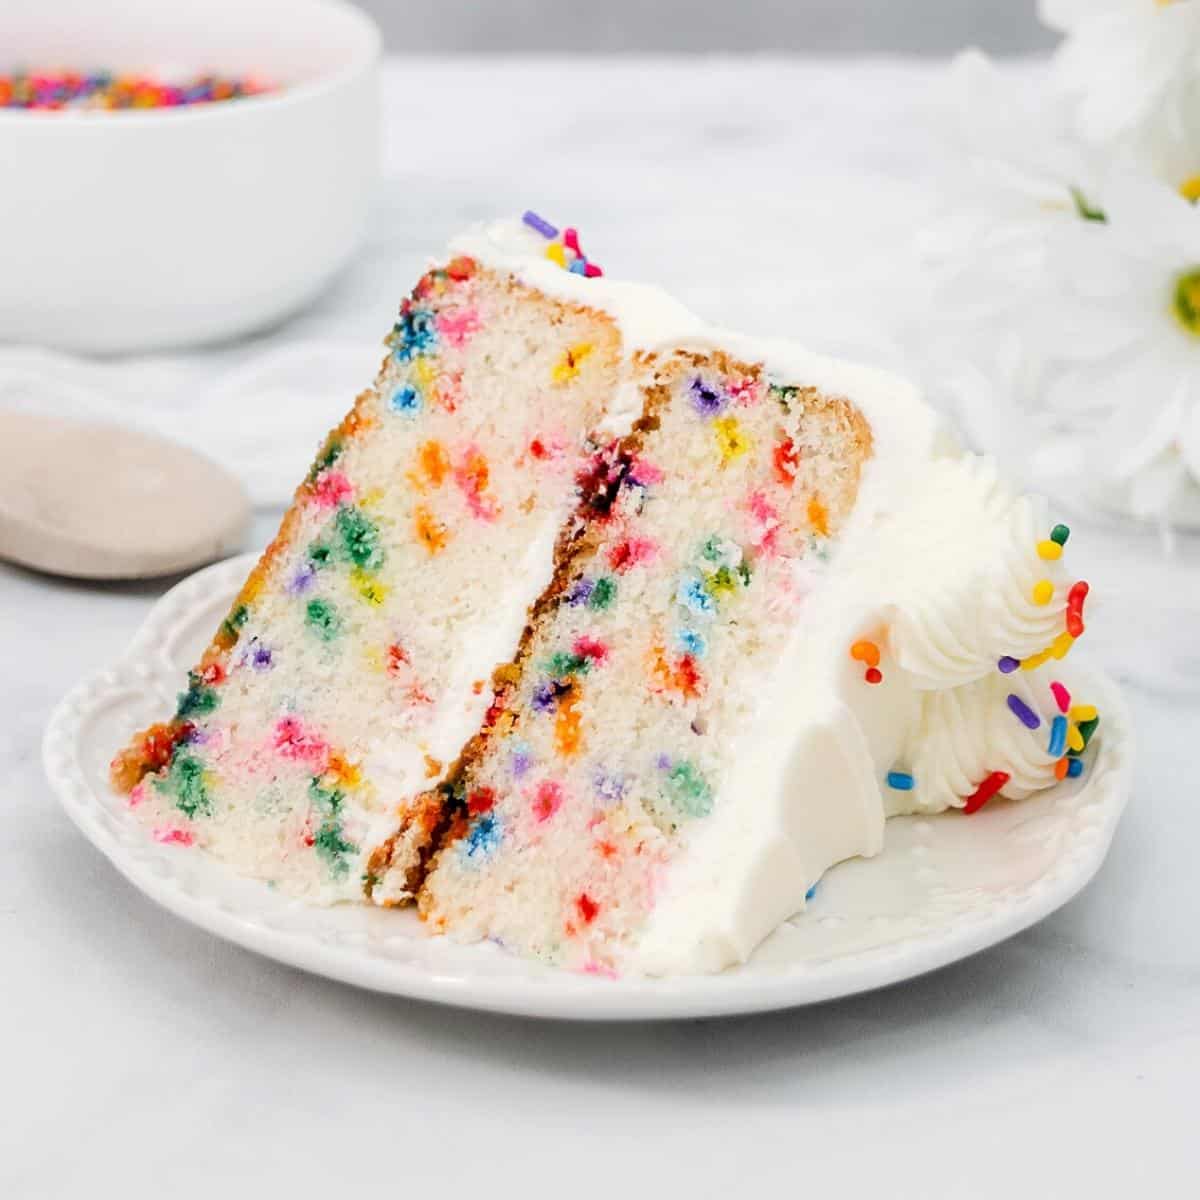 The Most Delicious Confetti Cake Recipe (Funfetti Cake) - Cake by Courtney